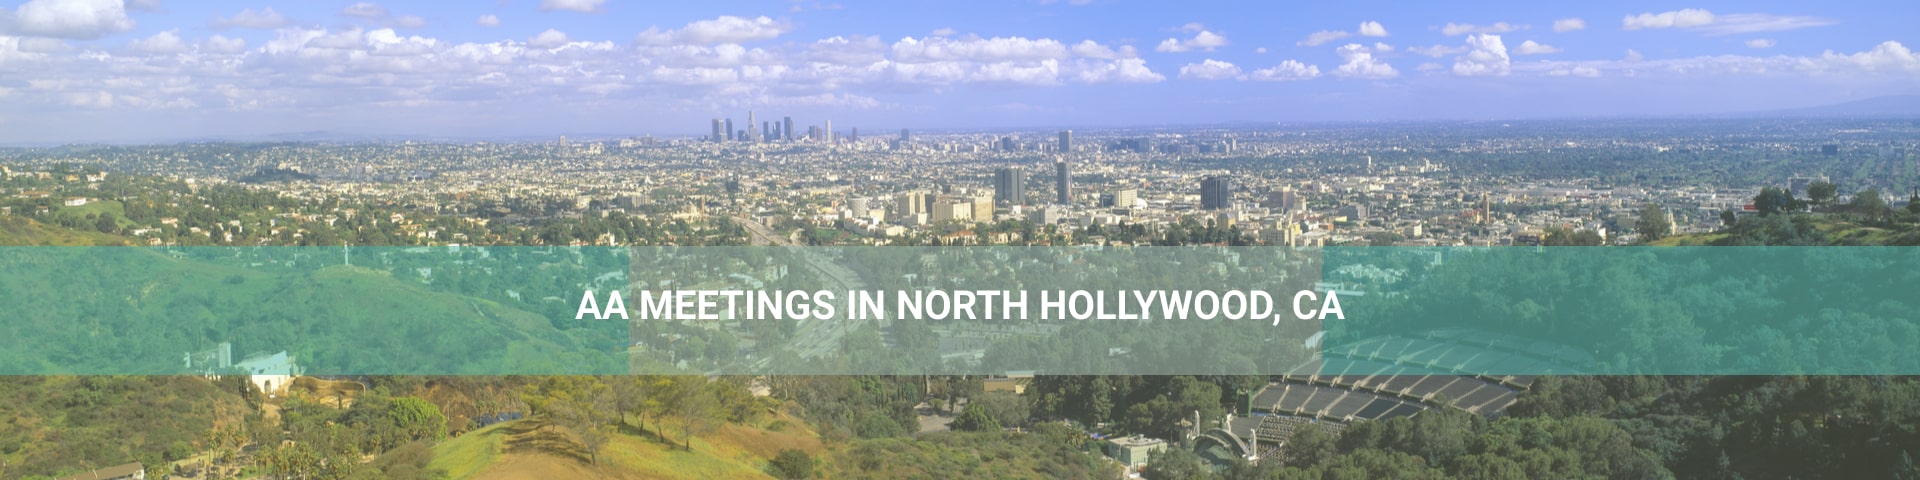 North Hollywood, California panorama.